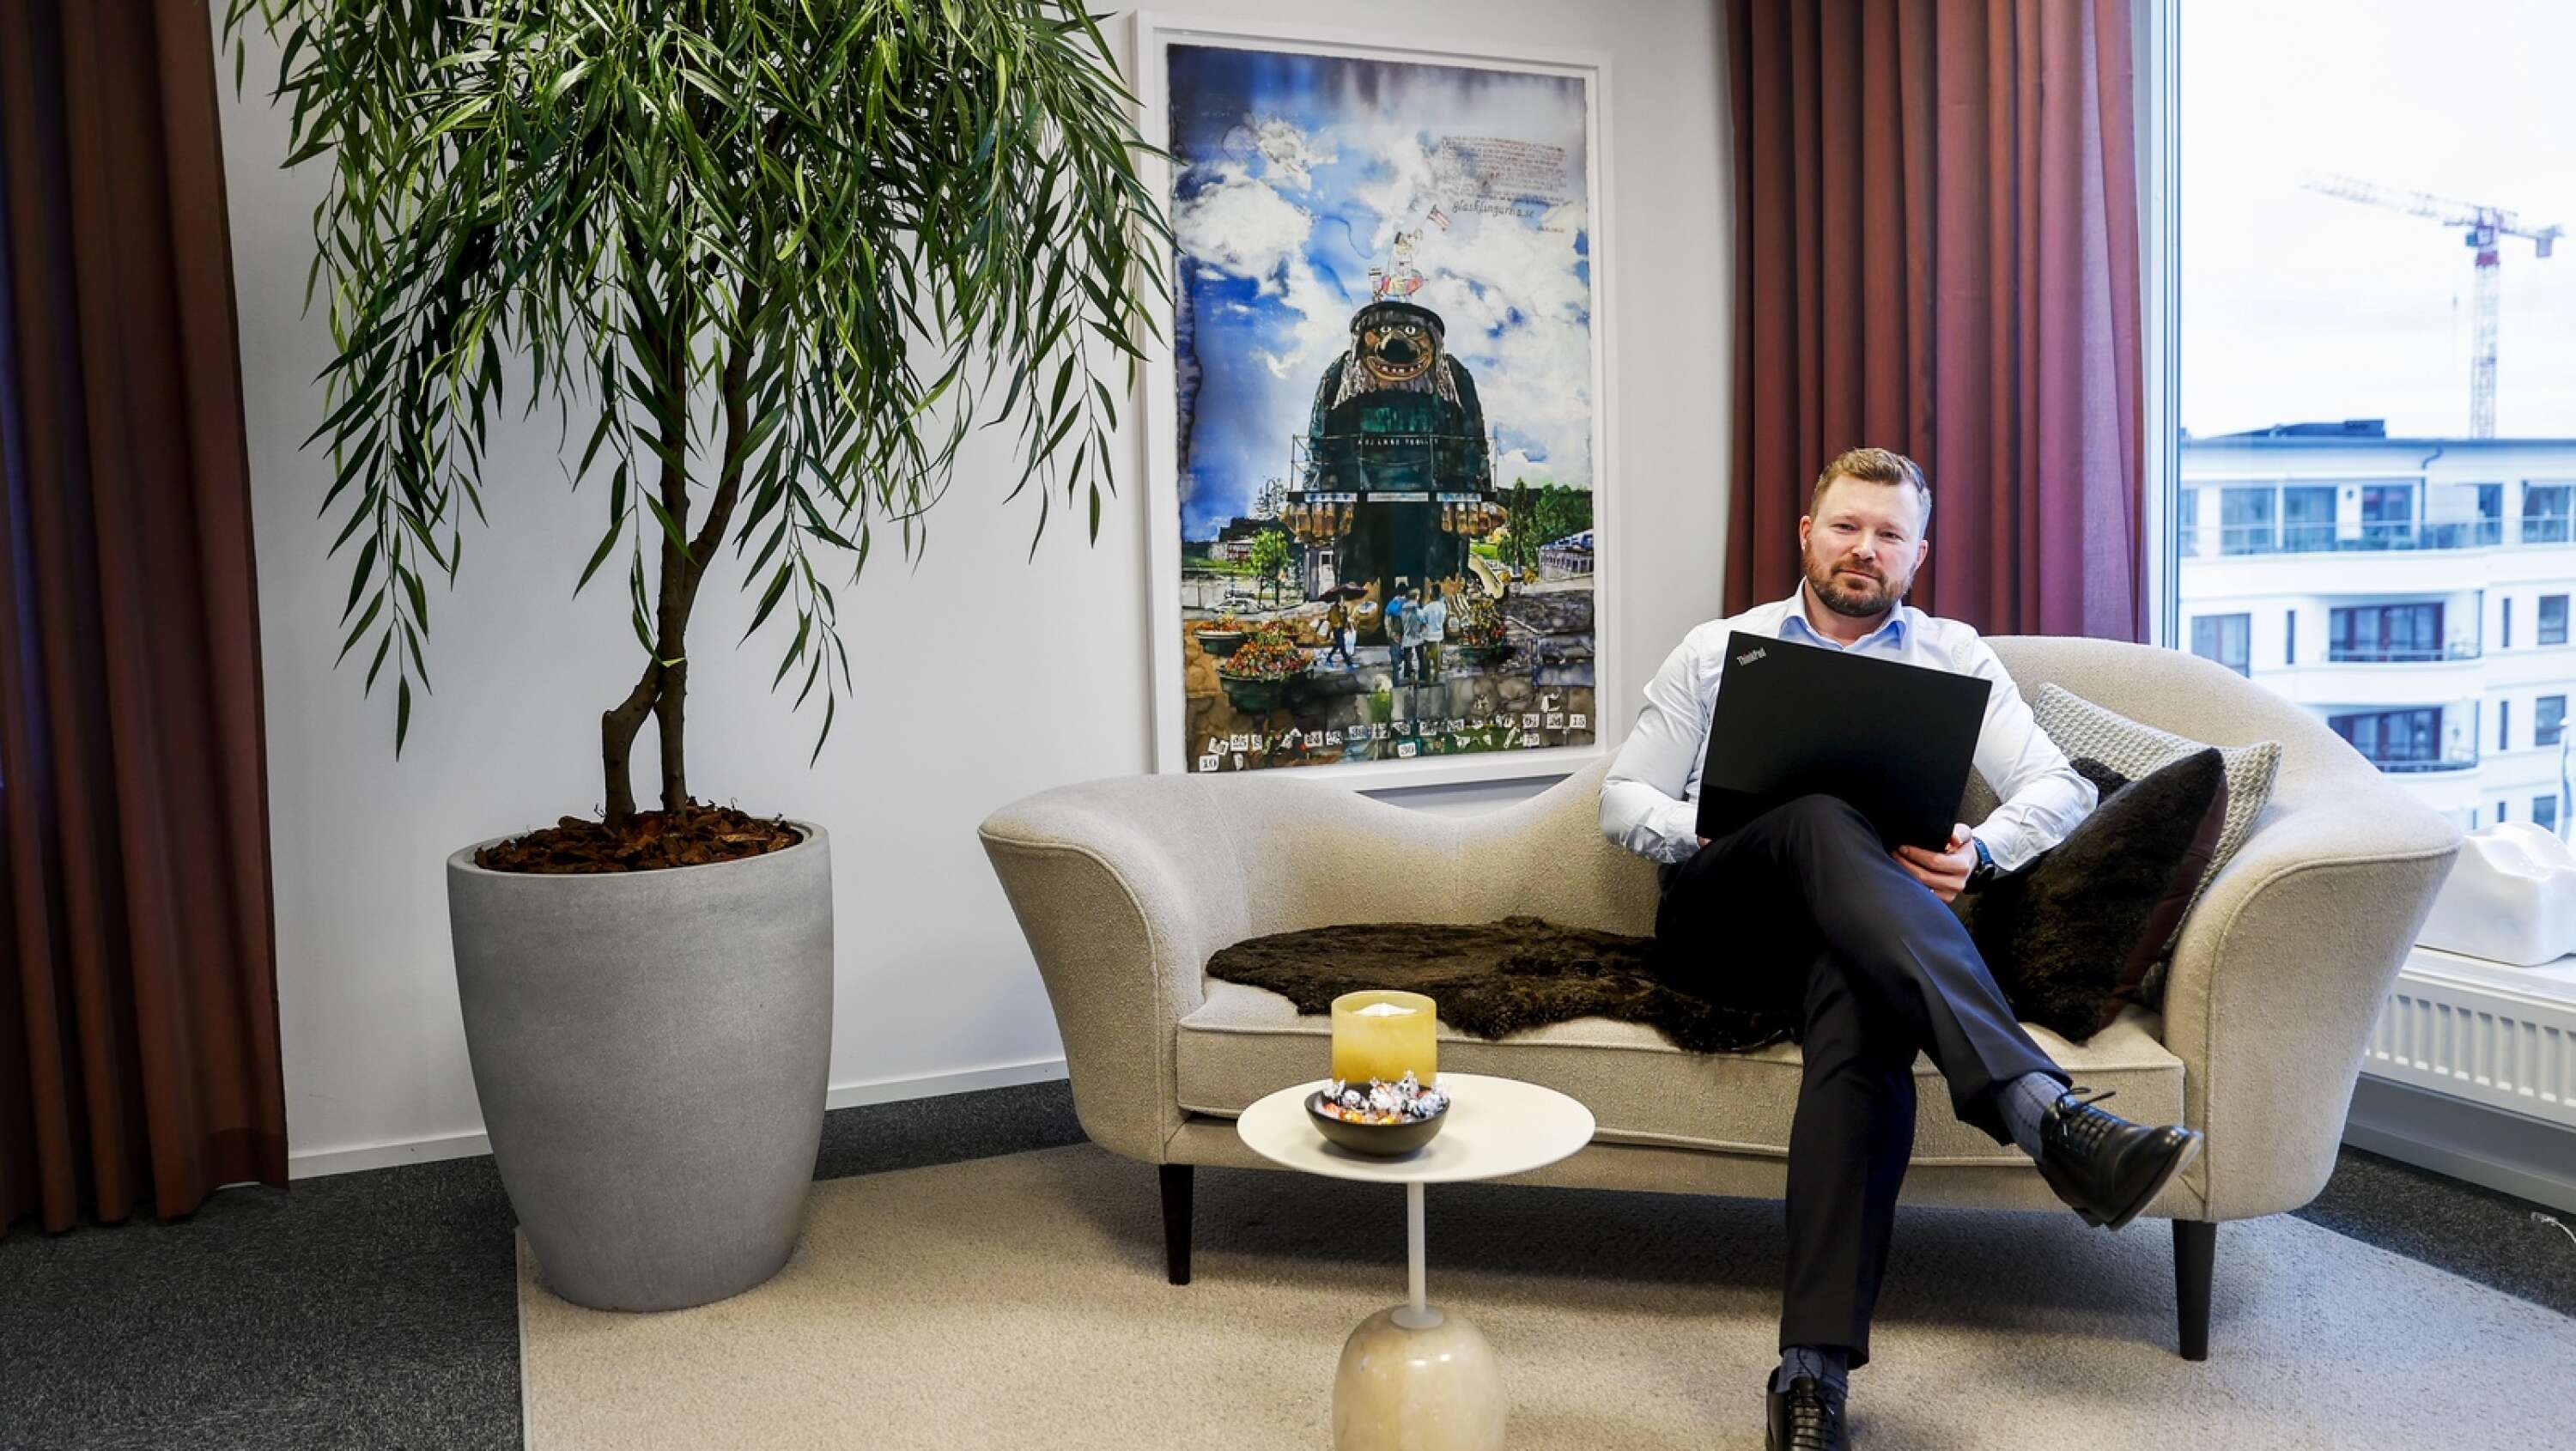 Årjängssonen Joel Fjeld gillar förstås att det hänger en tavla med Årjängstrollet på kontoret.